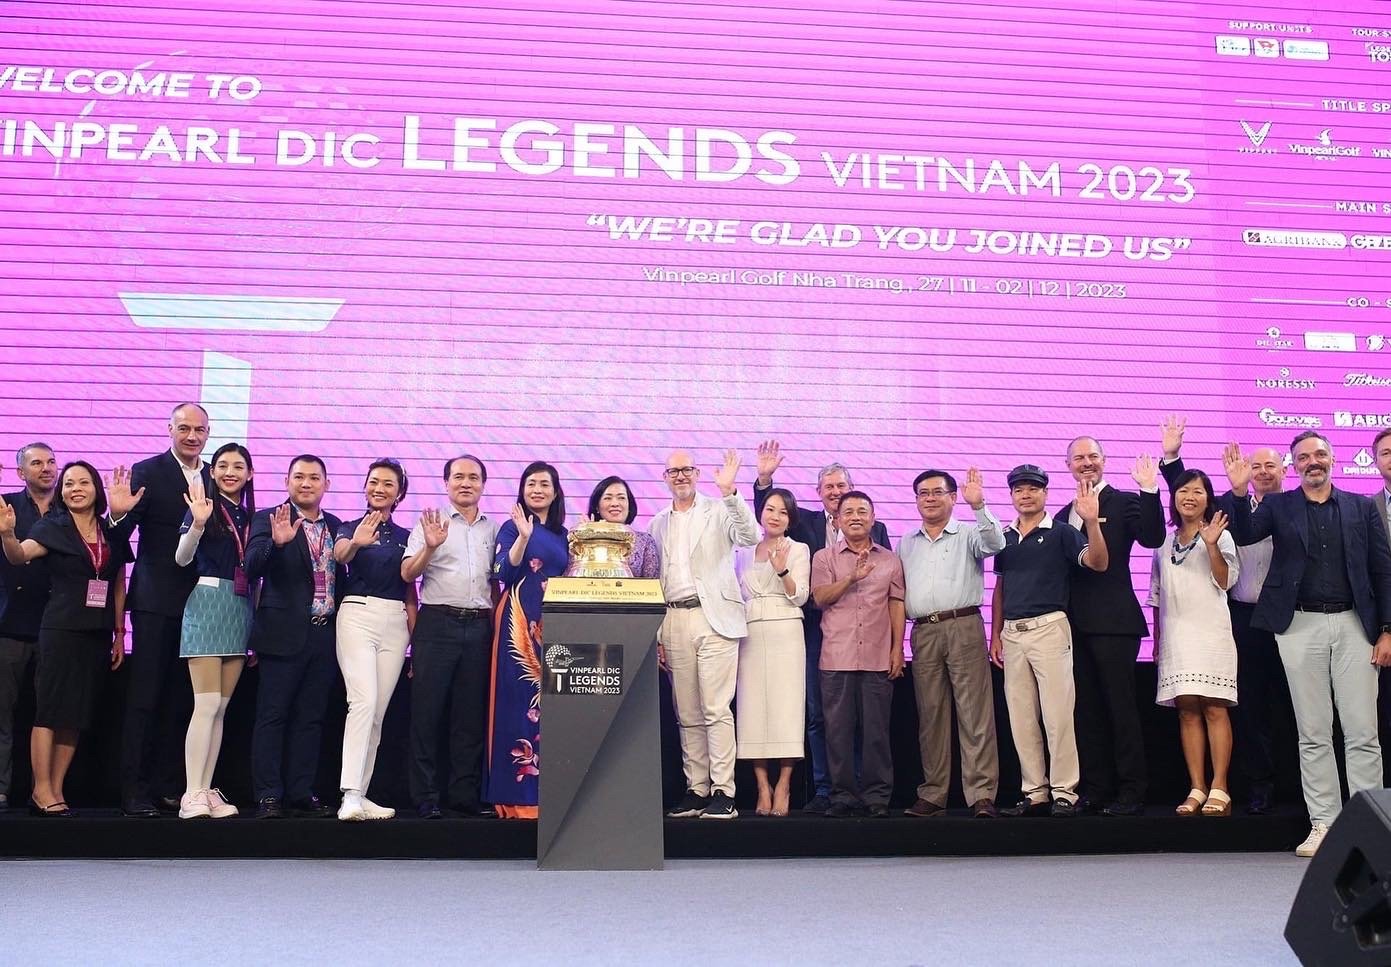 Vinpearl DIC Legends Vietnam 2023